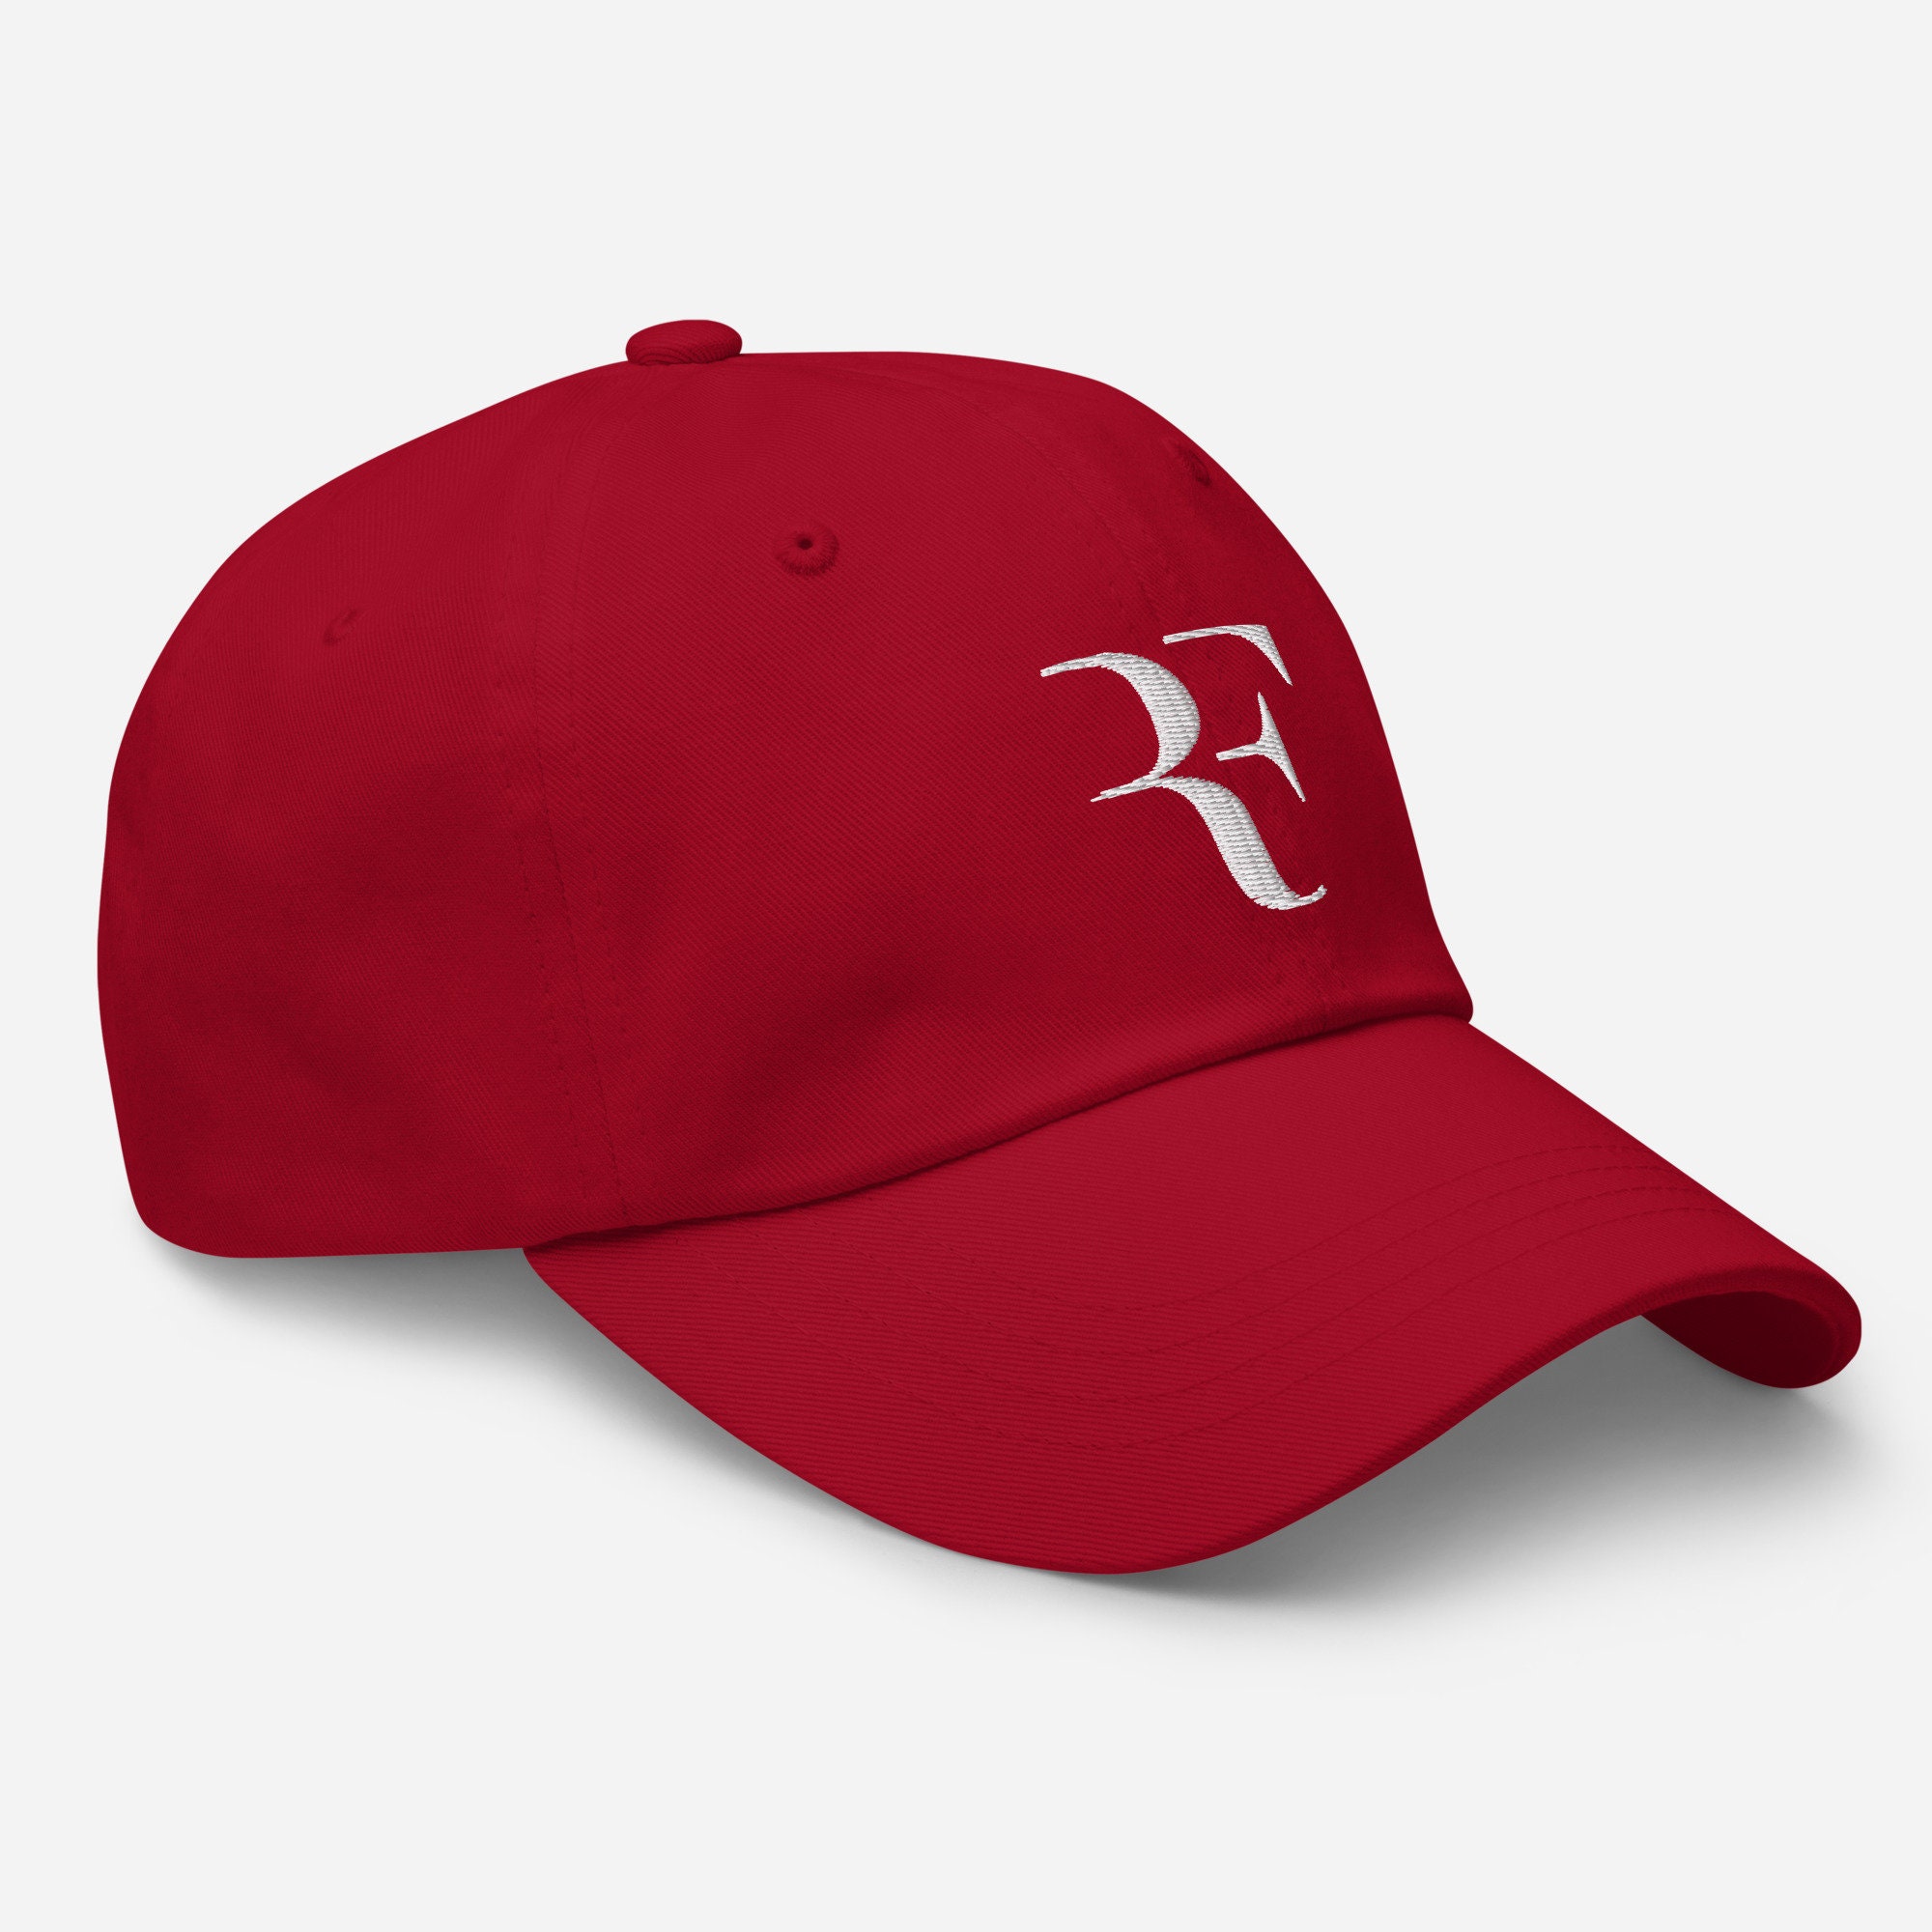 Roger Federer RF Dad hat Embroidered Hat